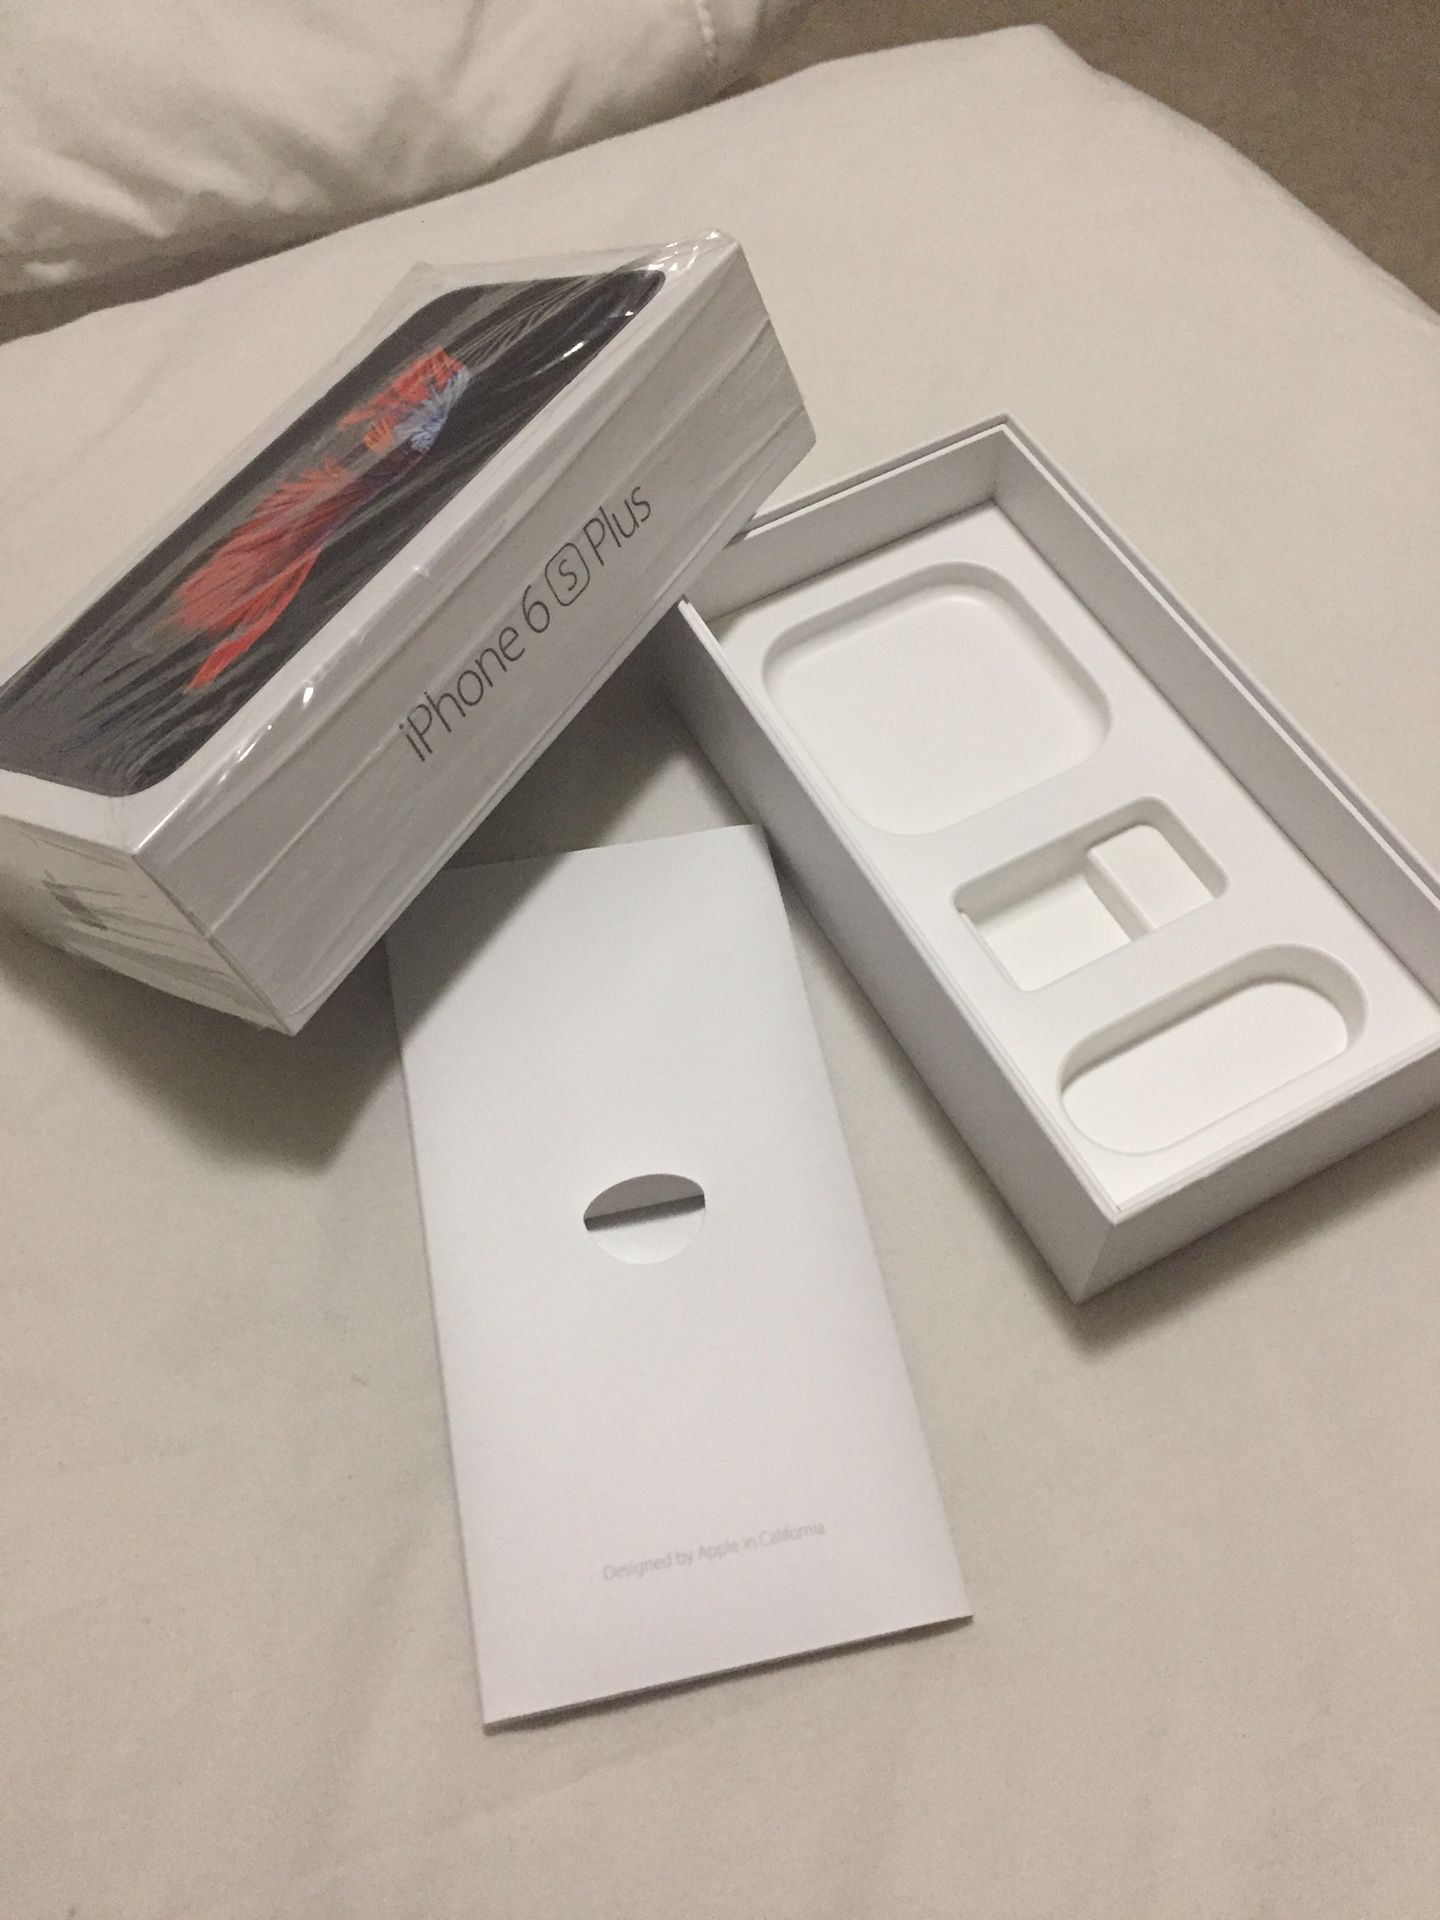 iPhone 6s Plus box